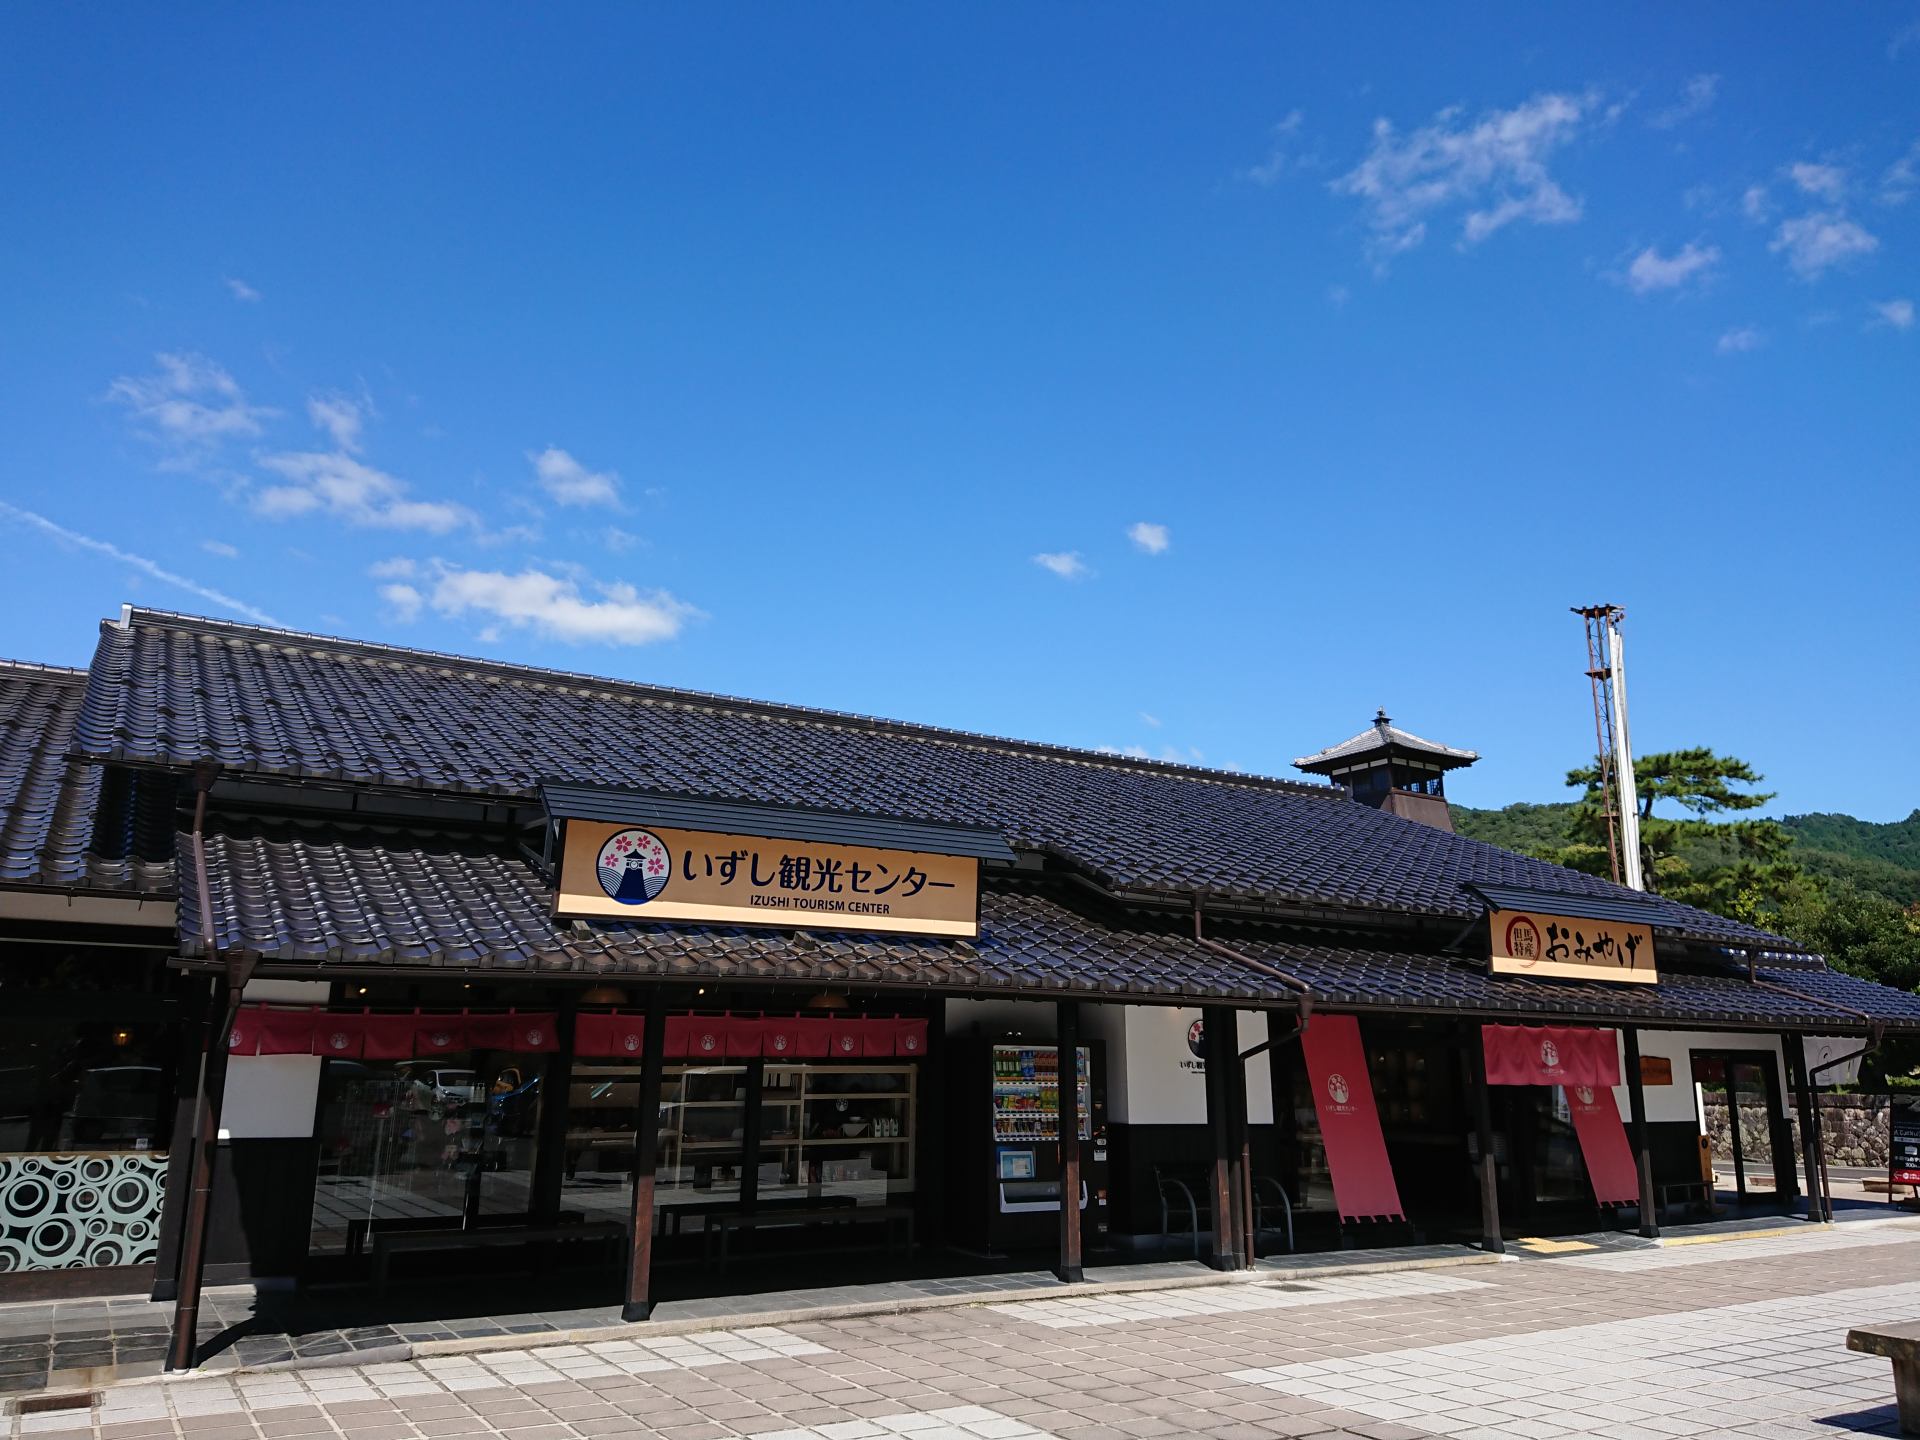 Arrêtez-vous au centre touristique d'Izushi avant de partir. Non seulement des informations touristiques, mais des nouilles locales et soba sont également disponibles.